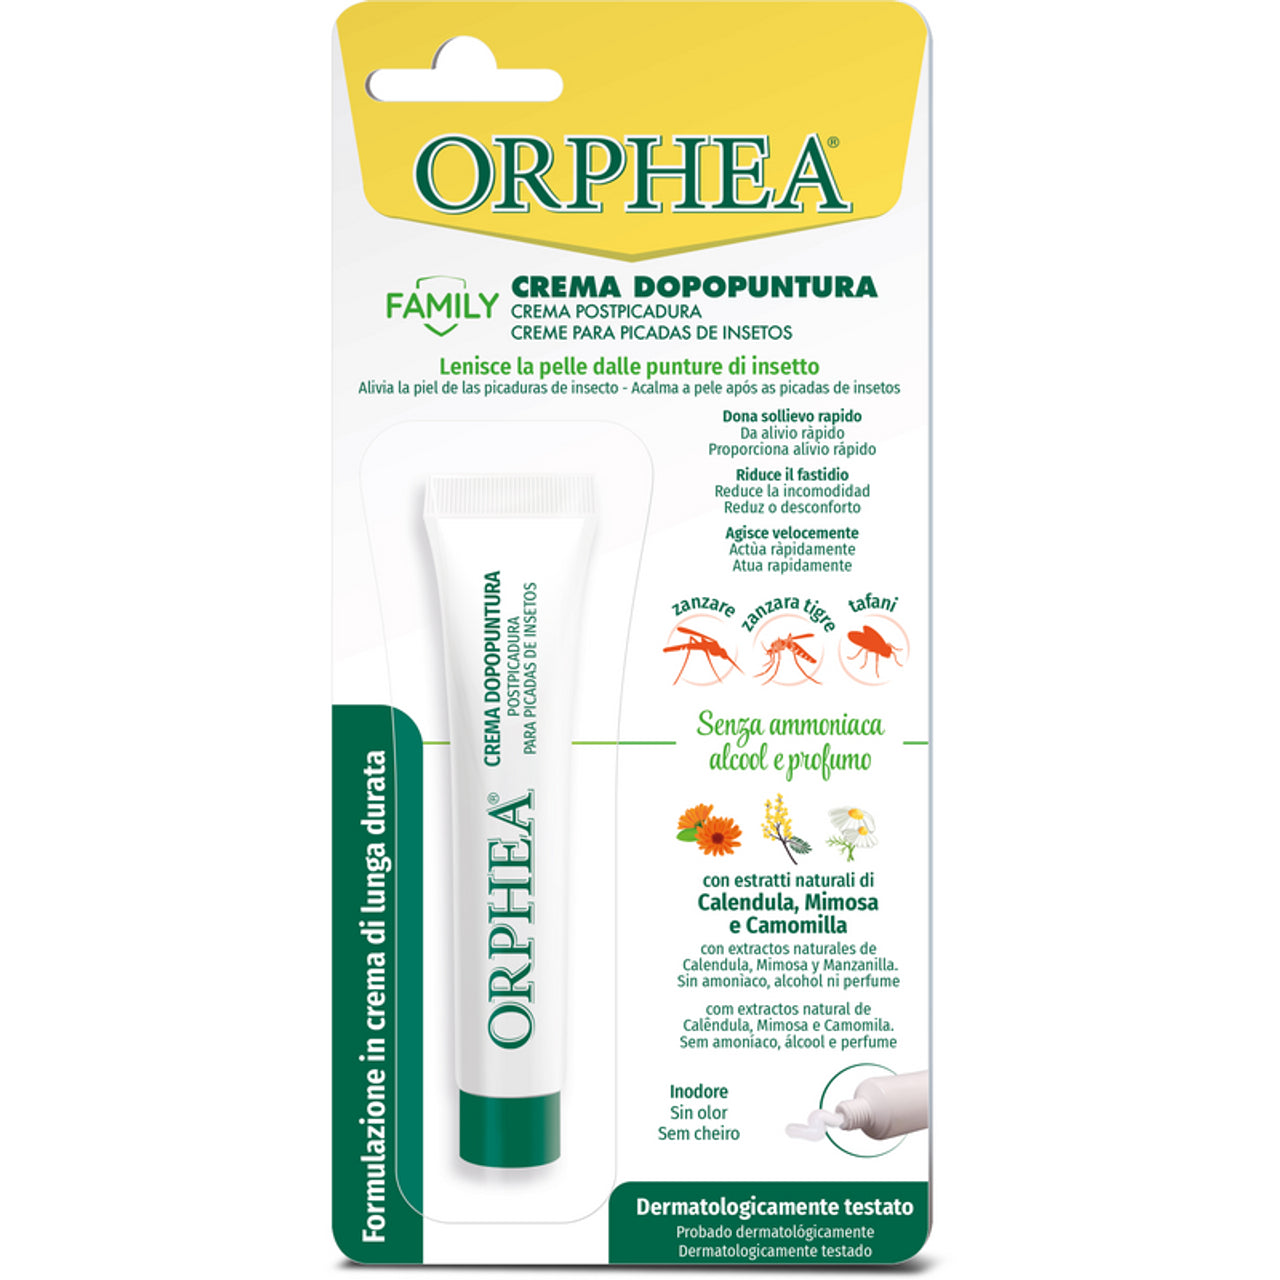 Orphea doppunture cream -perhe 15 ml